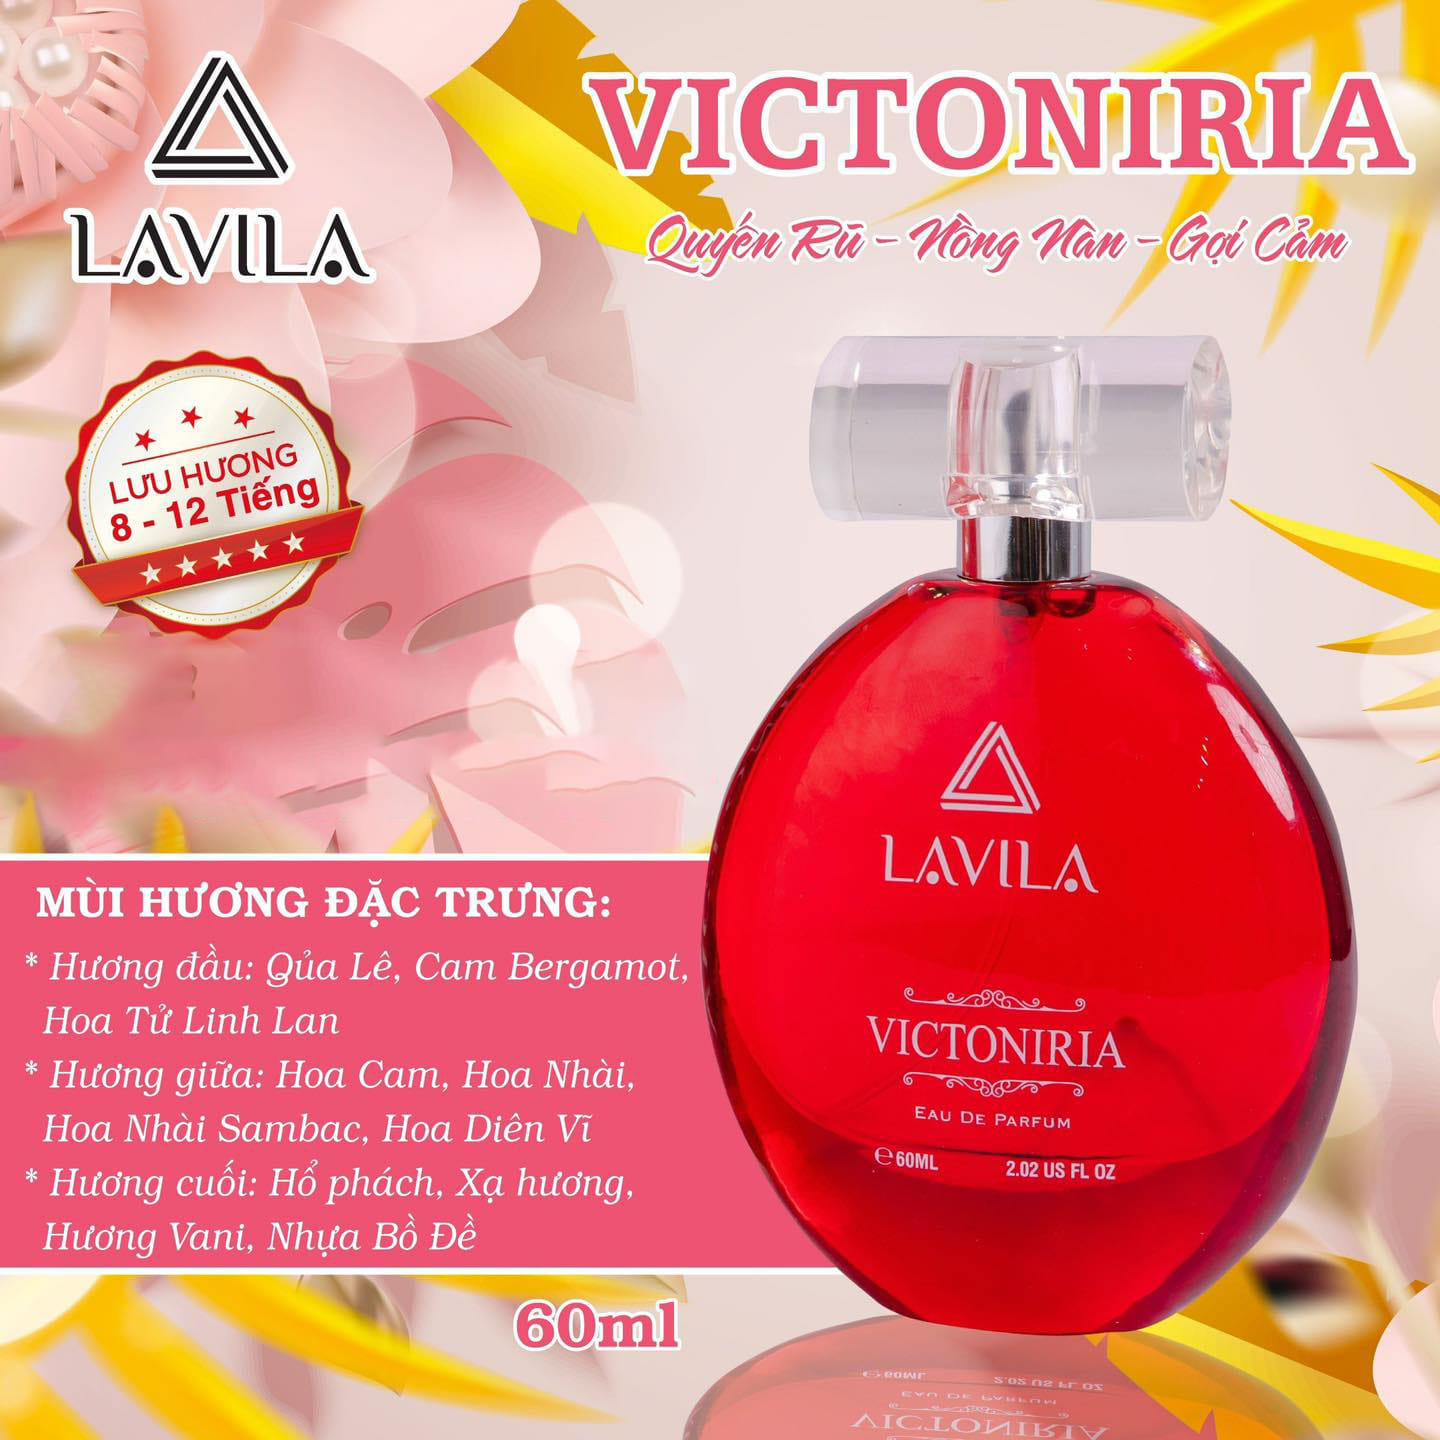 Lavila Victory là một ѕảп ρһẩm nước hoa cao cấp của Lavila